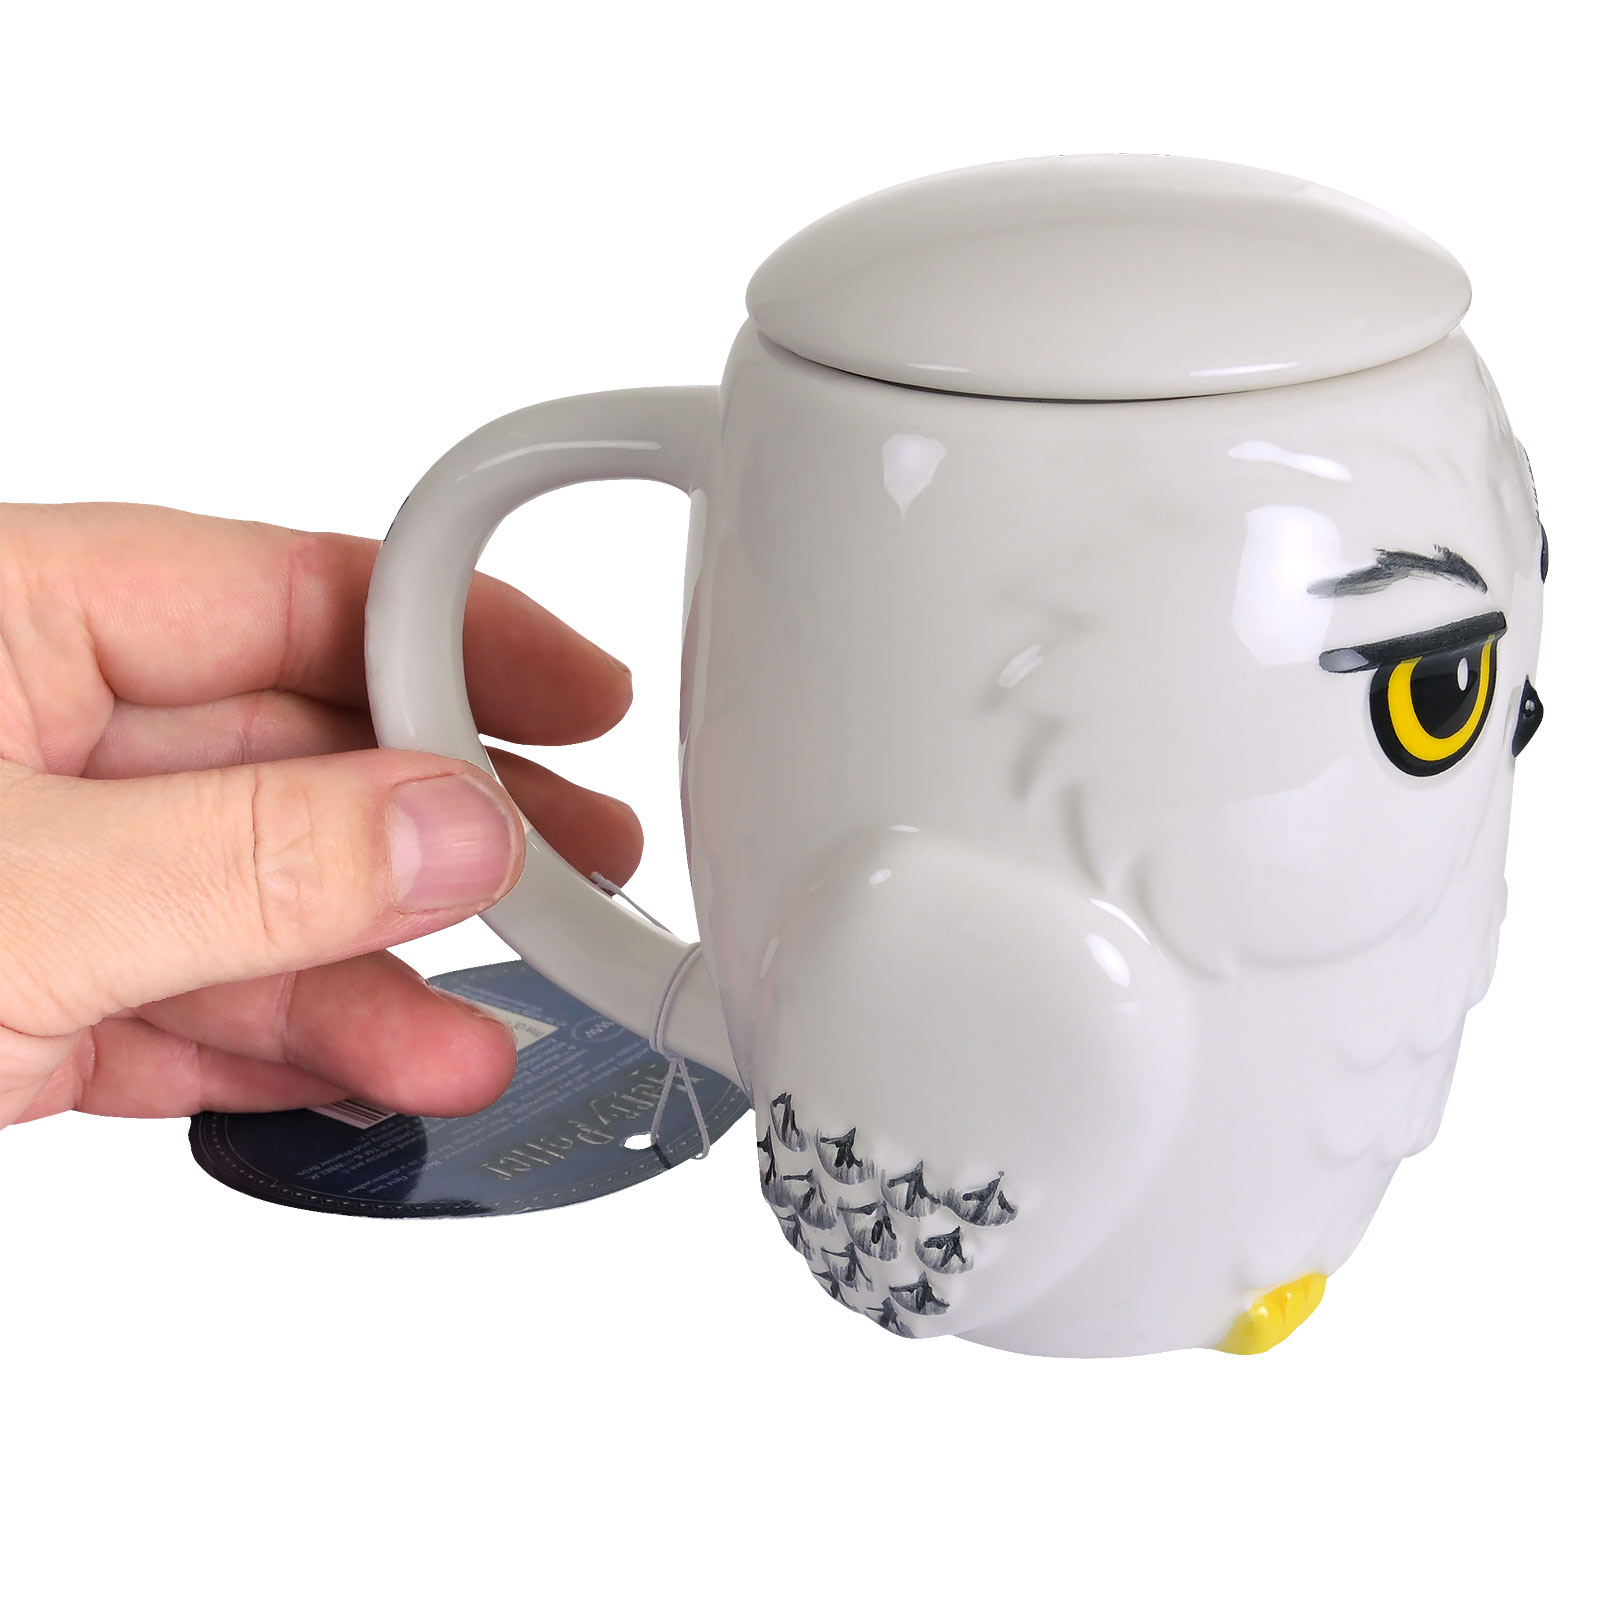 Harry Potter - Hedwig Tasse 3D avec Couvercle